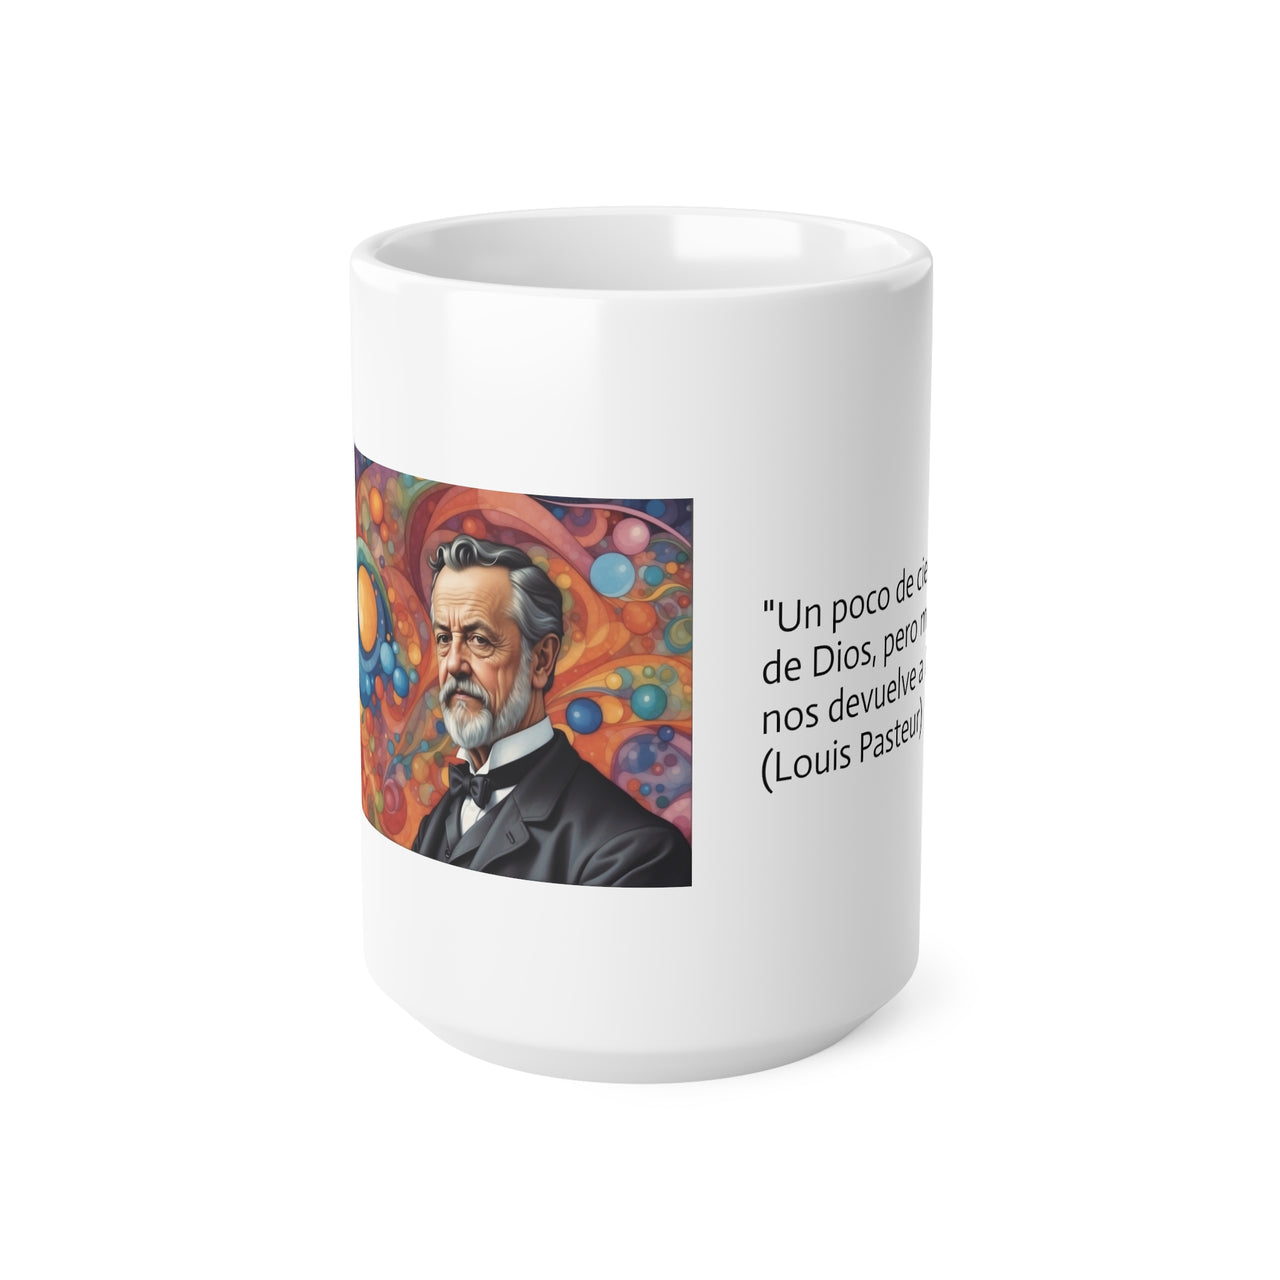 Taza de Louis Pasteur, Taza de desayuno, Taza de café, Taza con frase científica, 0.33 l, 0.44 l